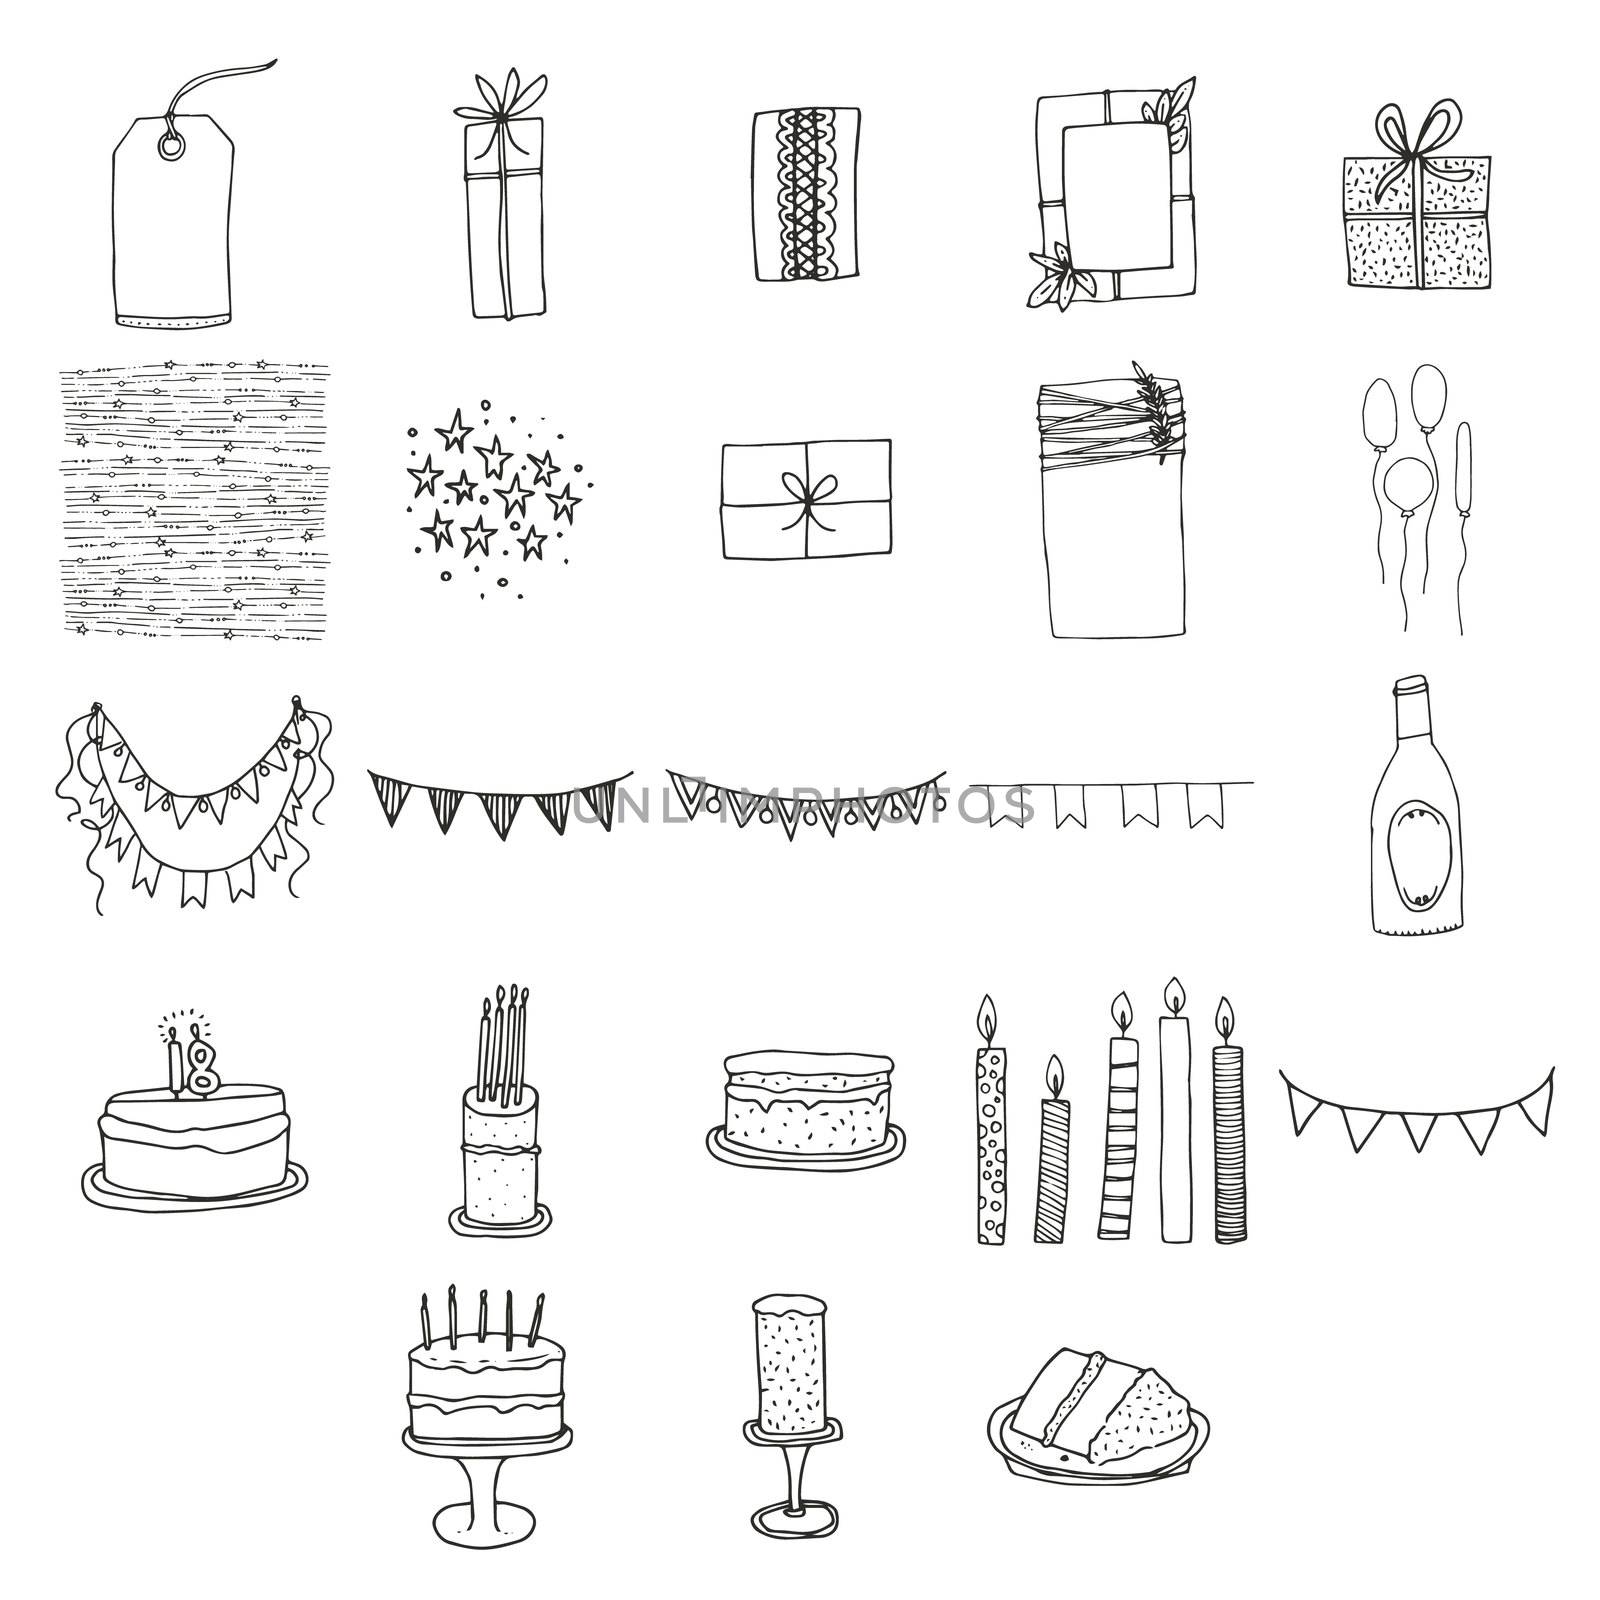 Various birthday celebration icons by Wavebreakmedia